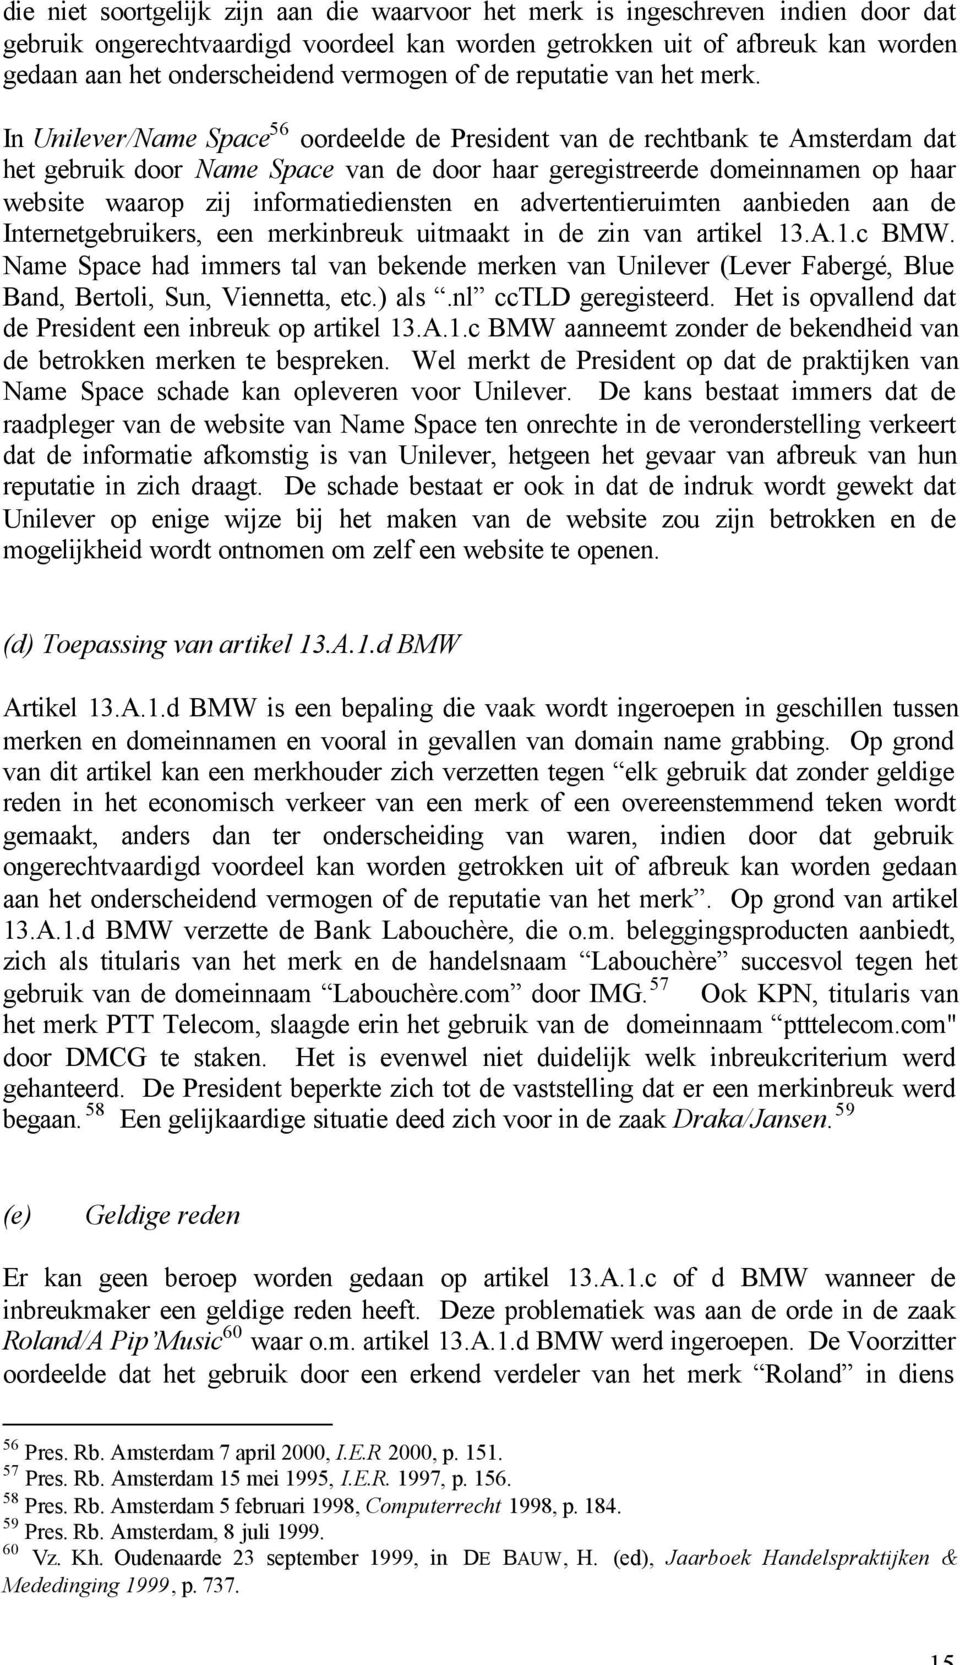 In Unilever/Name Space 56 oordeelde de President van de rechtbank te Amsterdam dat het gebruik door Name Space van de door haar geregistreerde domeinnamen op haar website waarop zij